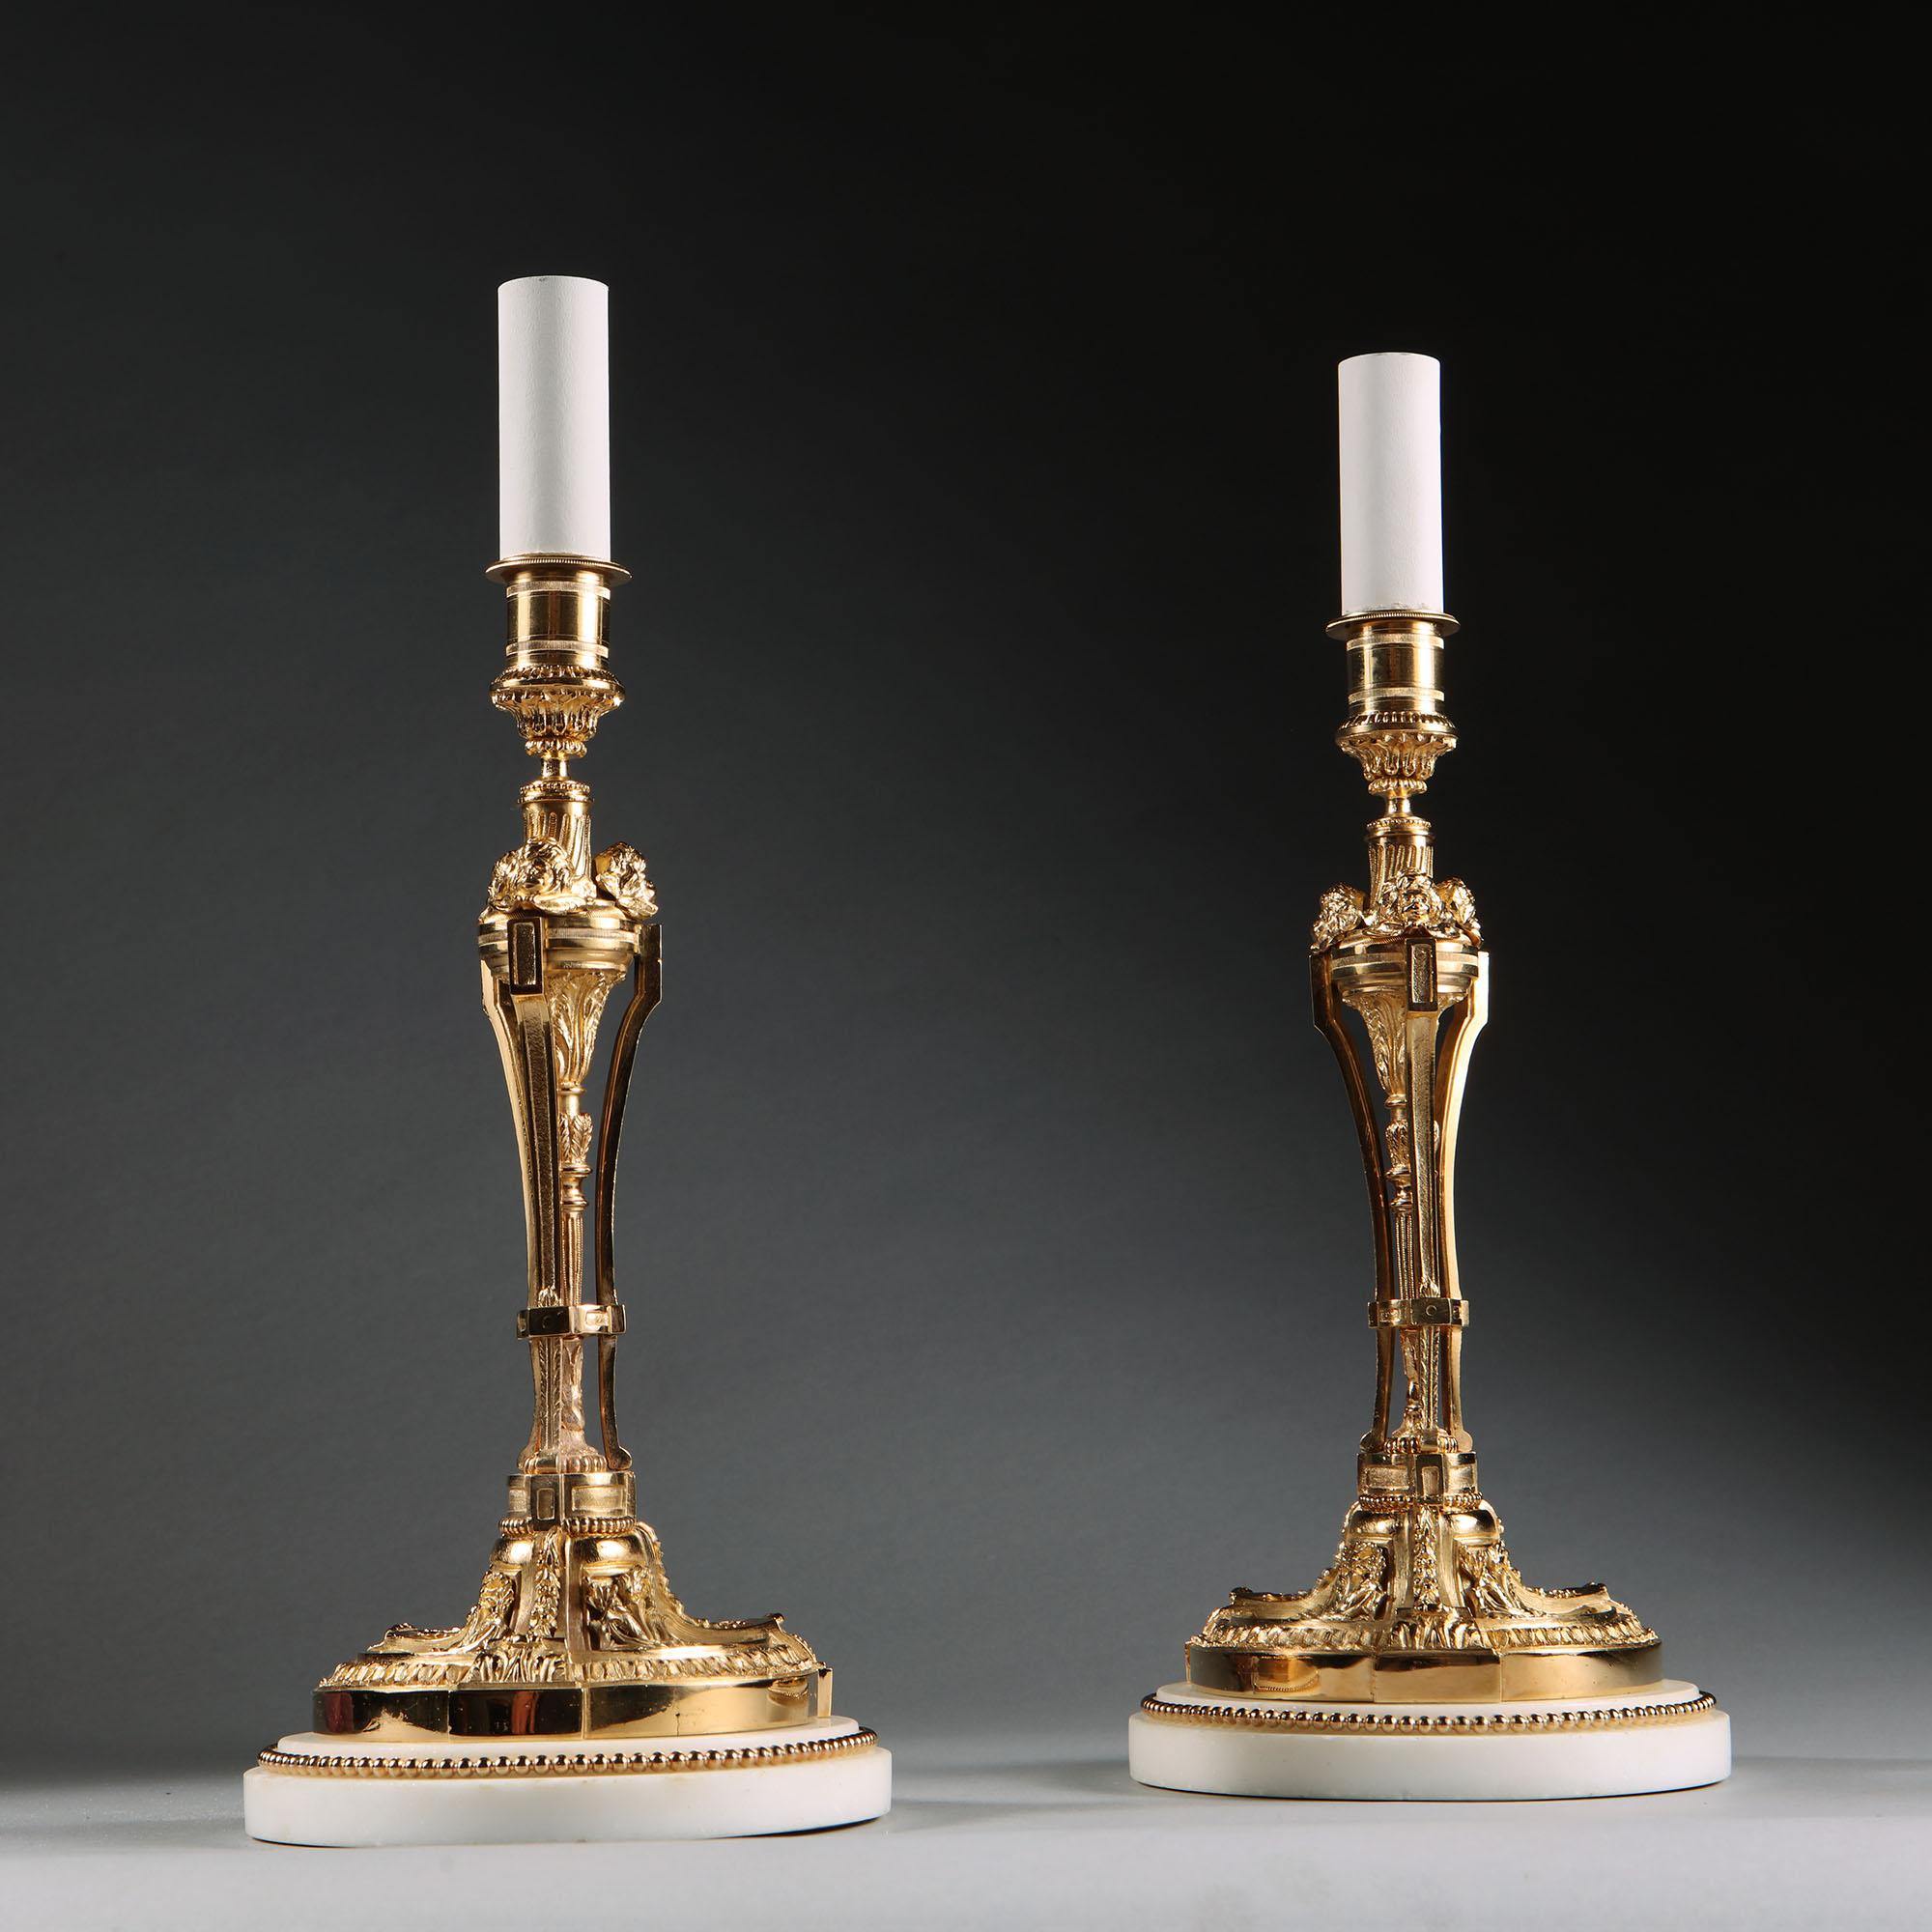 Paire de chandeliers en bronze doré néoclassique de la fin du XIXe siècle, d'une finesse exceptionnelle, montés sur des bases en marbre blanc avec des bordures en perles dorées. Maintenant montées comme lampes de table.

France, vers